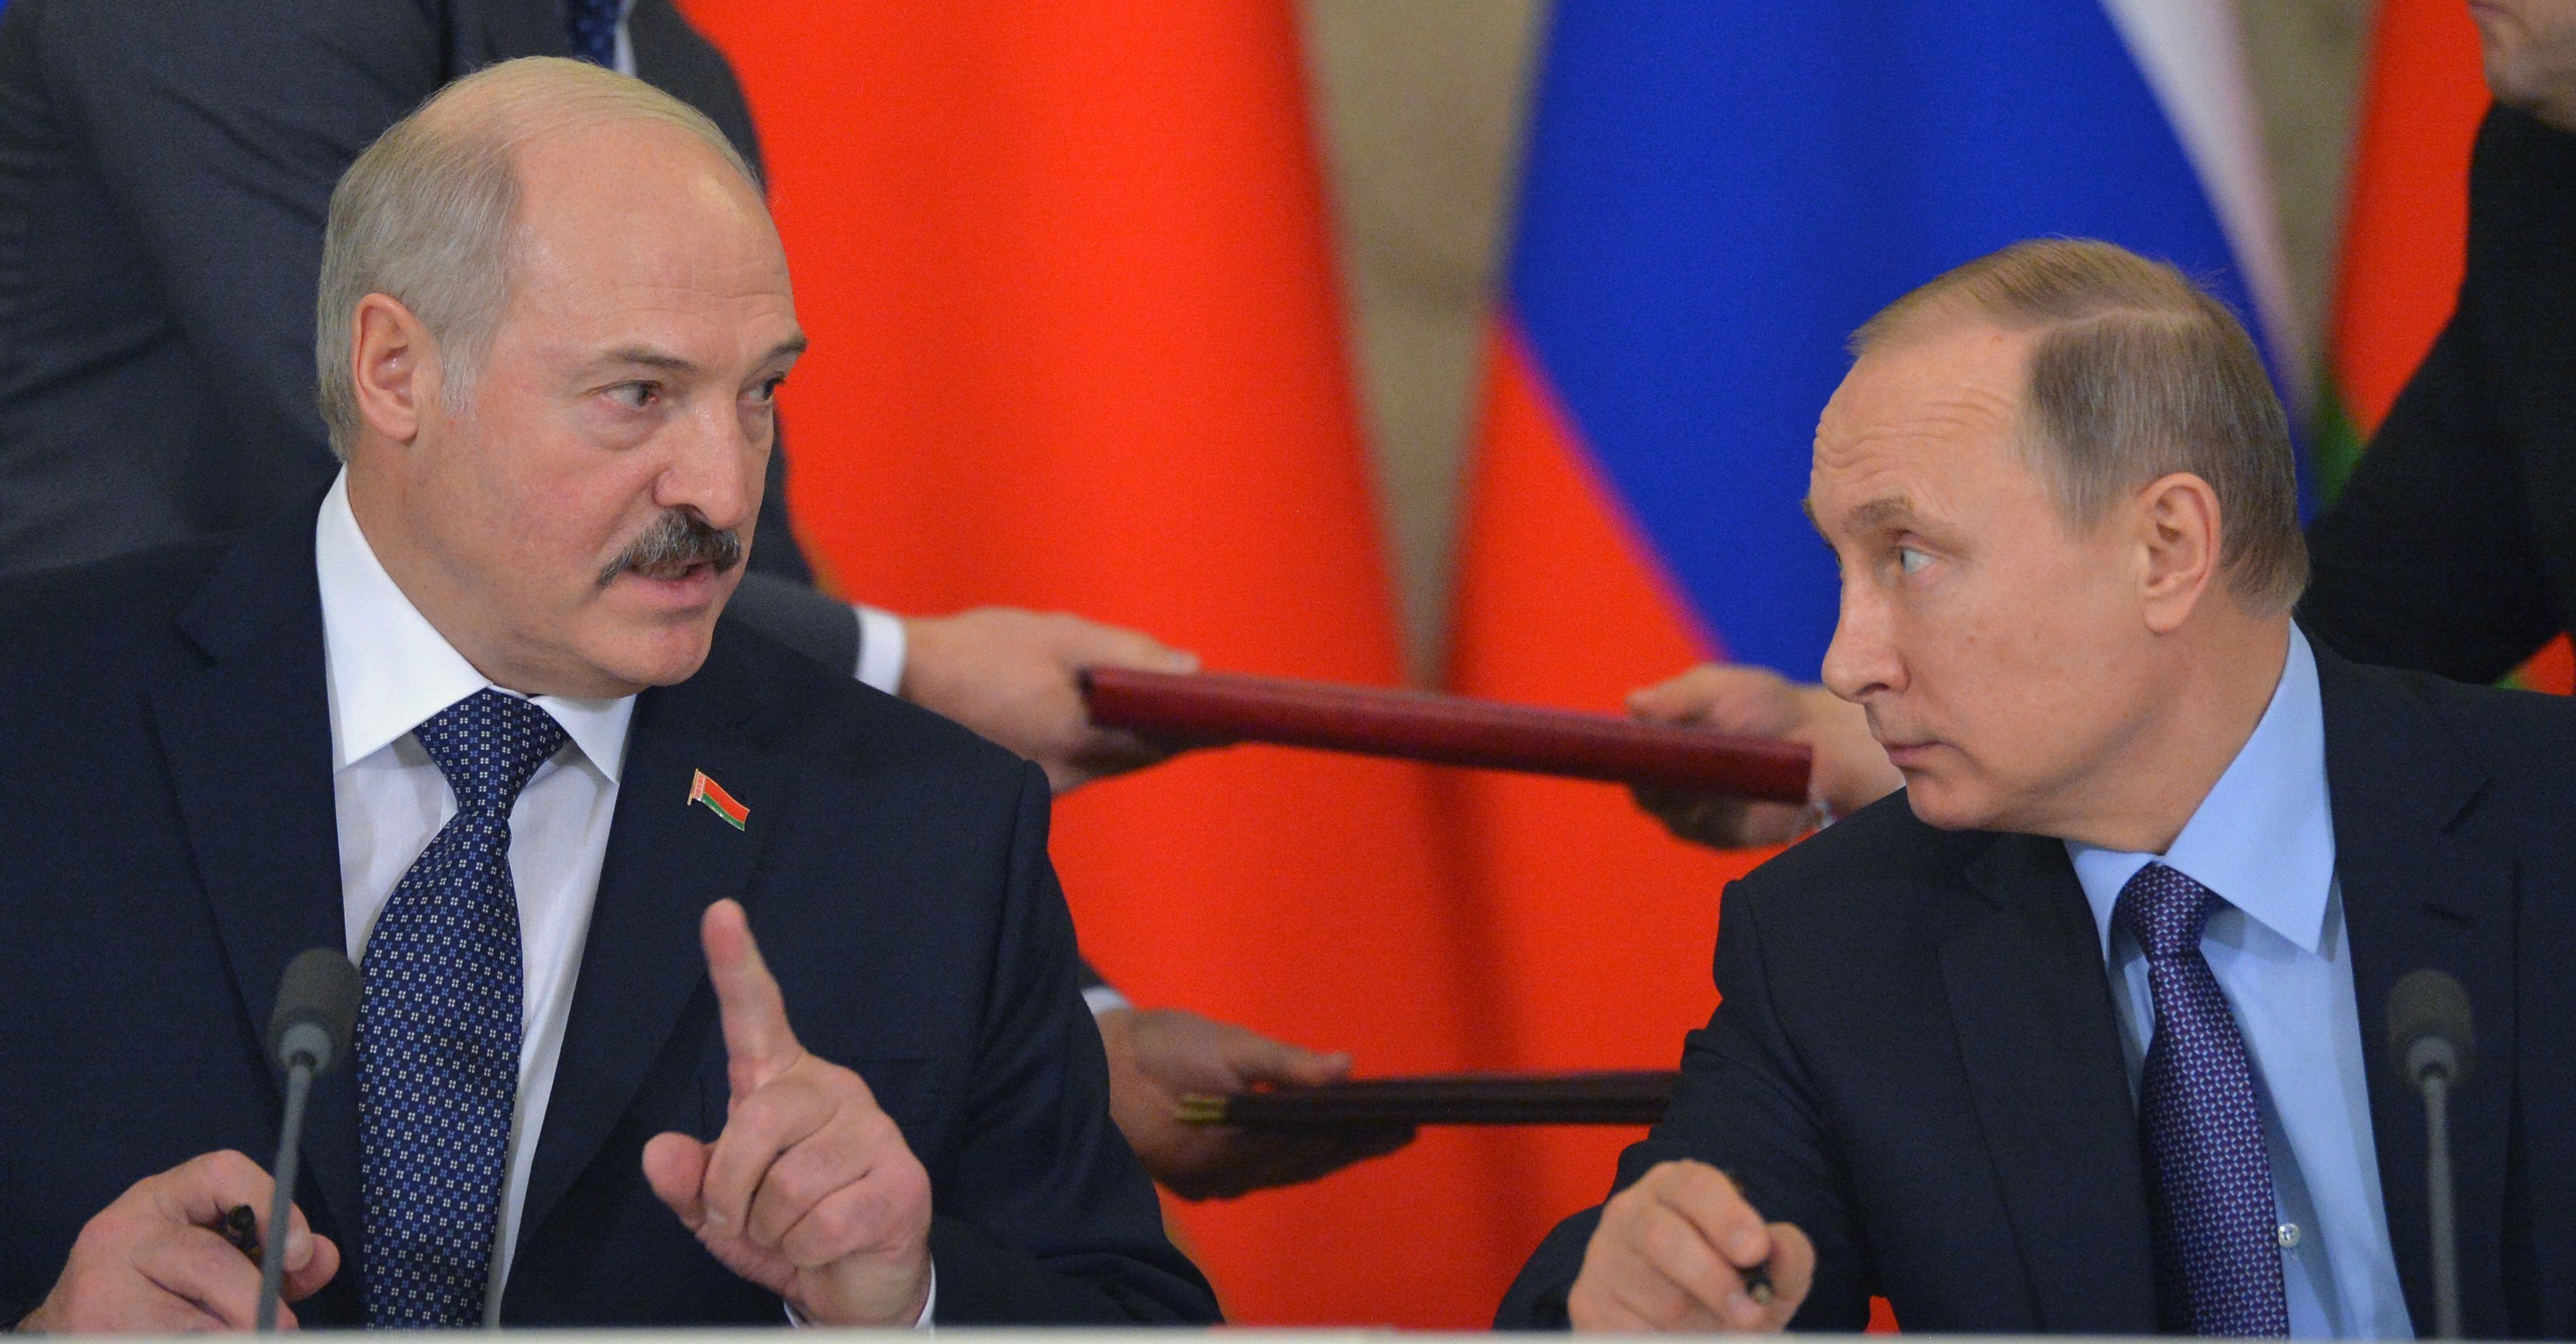 El dictador bielorruso Alexander Lukashenko se aferra a su alianza con Vladimir Putin y amenaza a Ucrania y Occidente (EFE)
